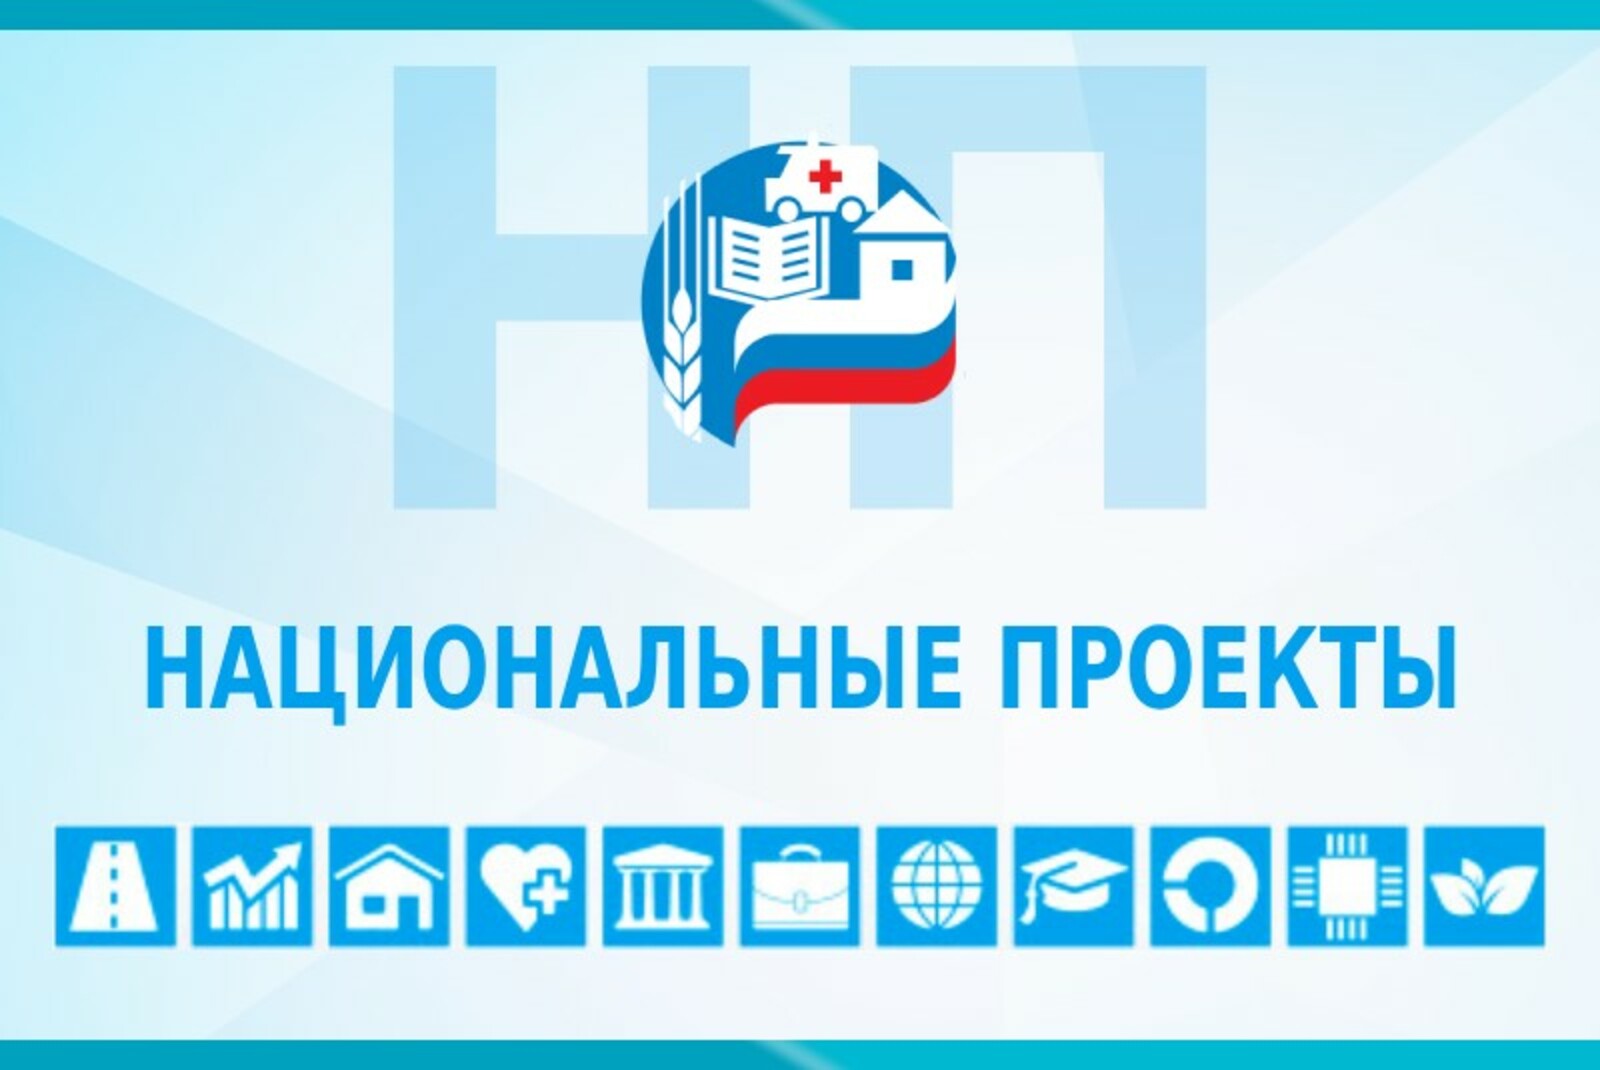 Предприятия-участники нацпроекта «Производительность труда» Башкортостана смогут принять участие в программе «Лидеры производительности»